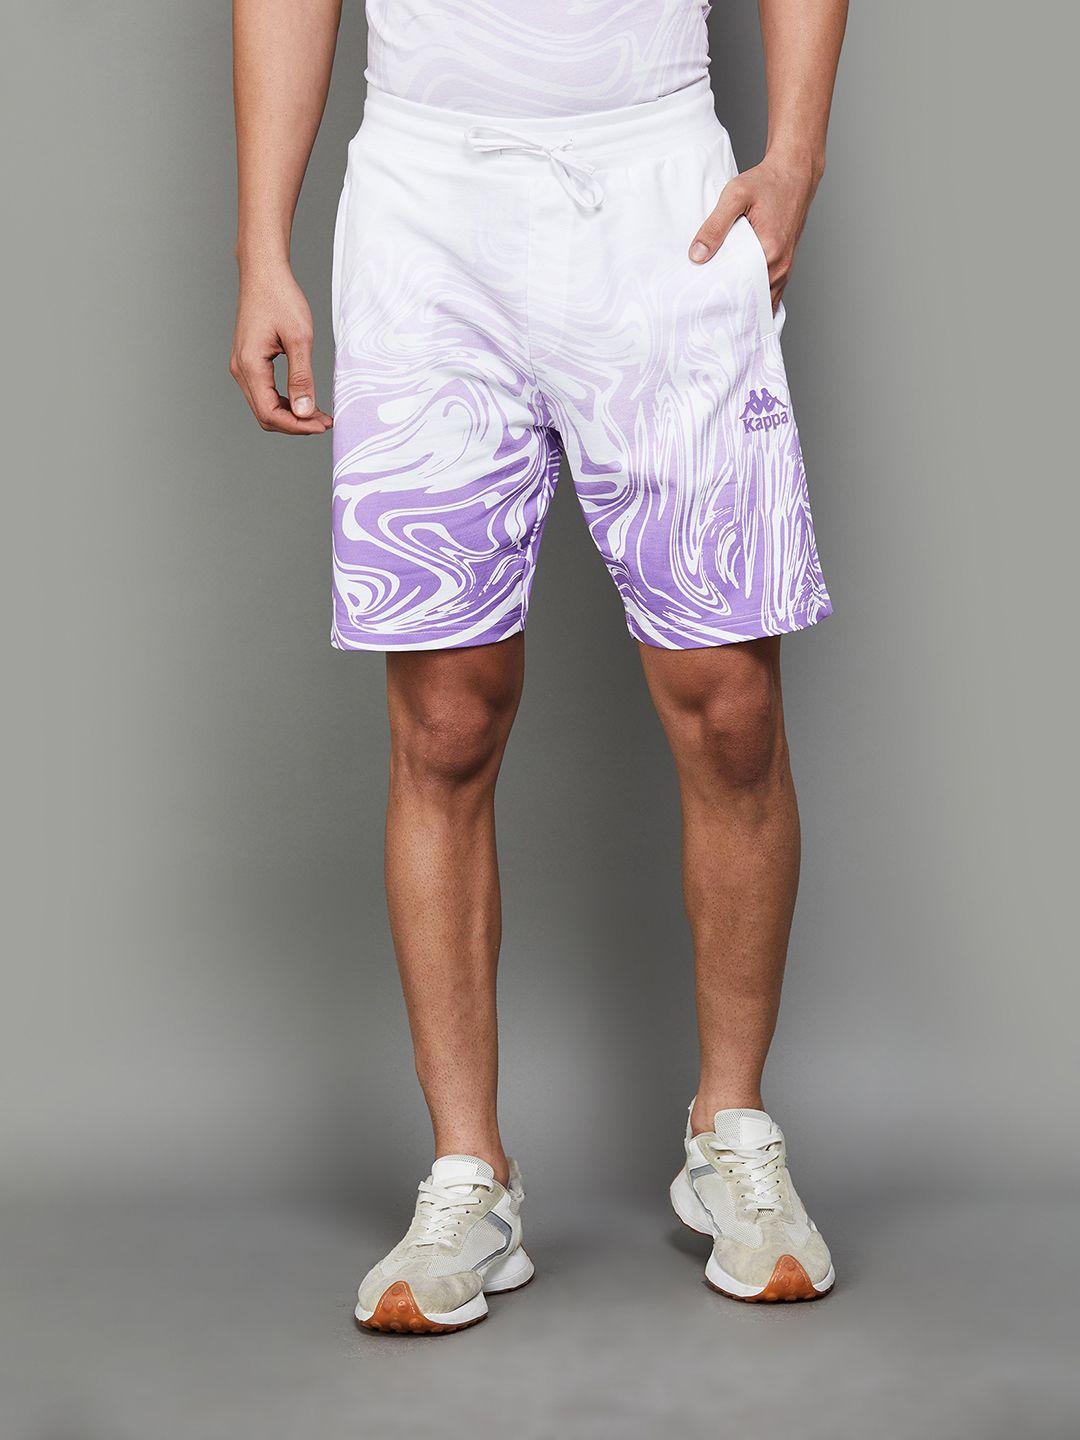 kappa men abstract printed cotton sports shorts